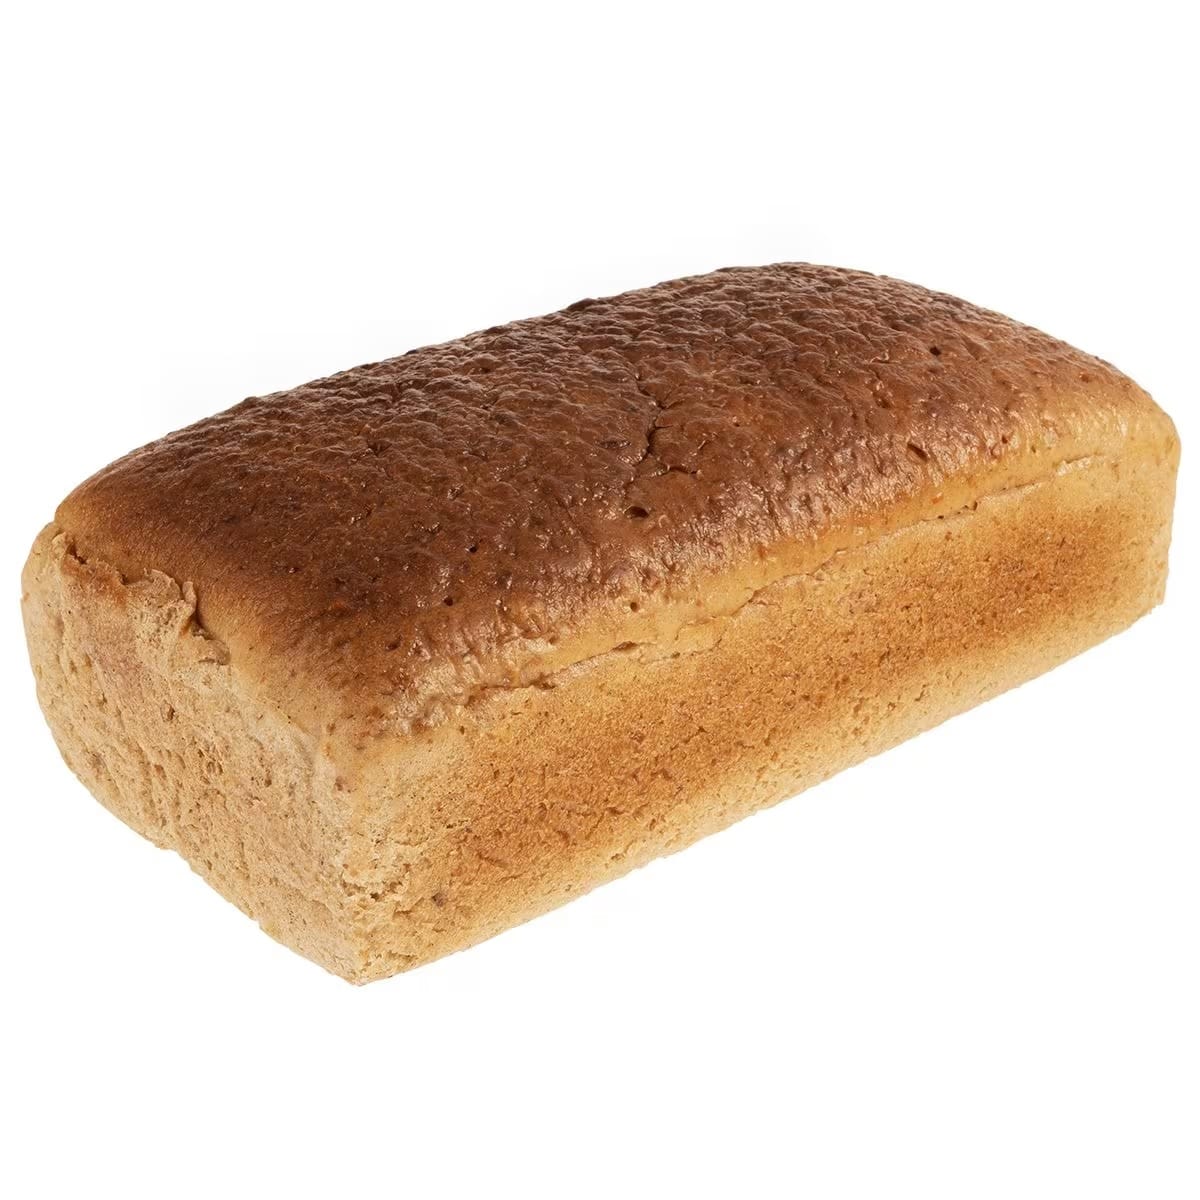 Chleb pytlowy 700 g +  kapusta z kiełbasą Arpol 850 g - zestaw